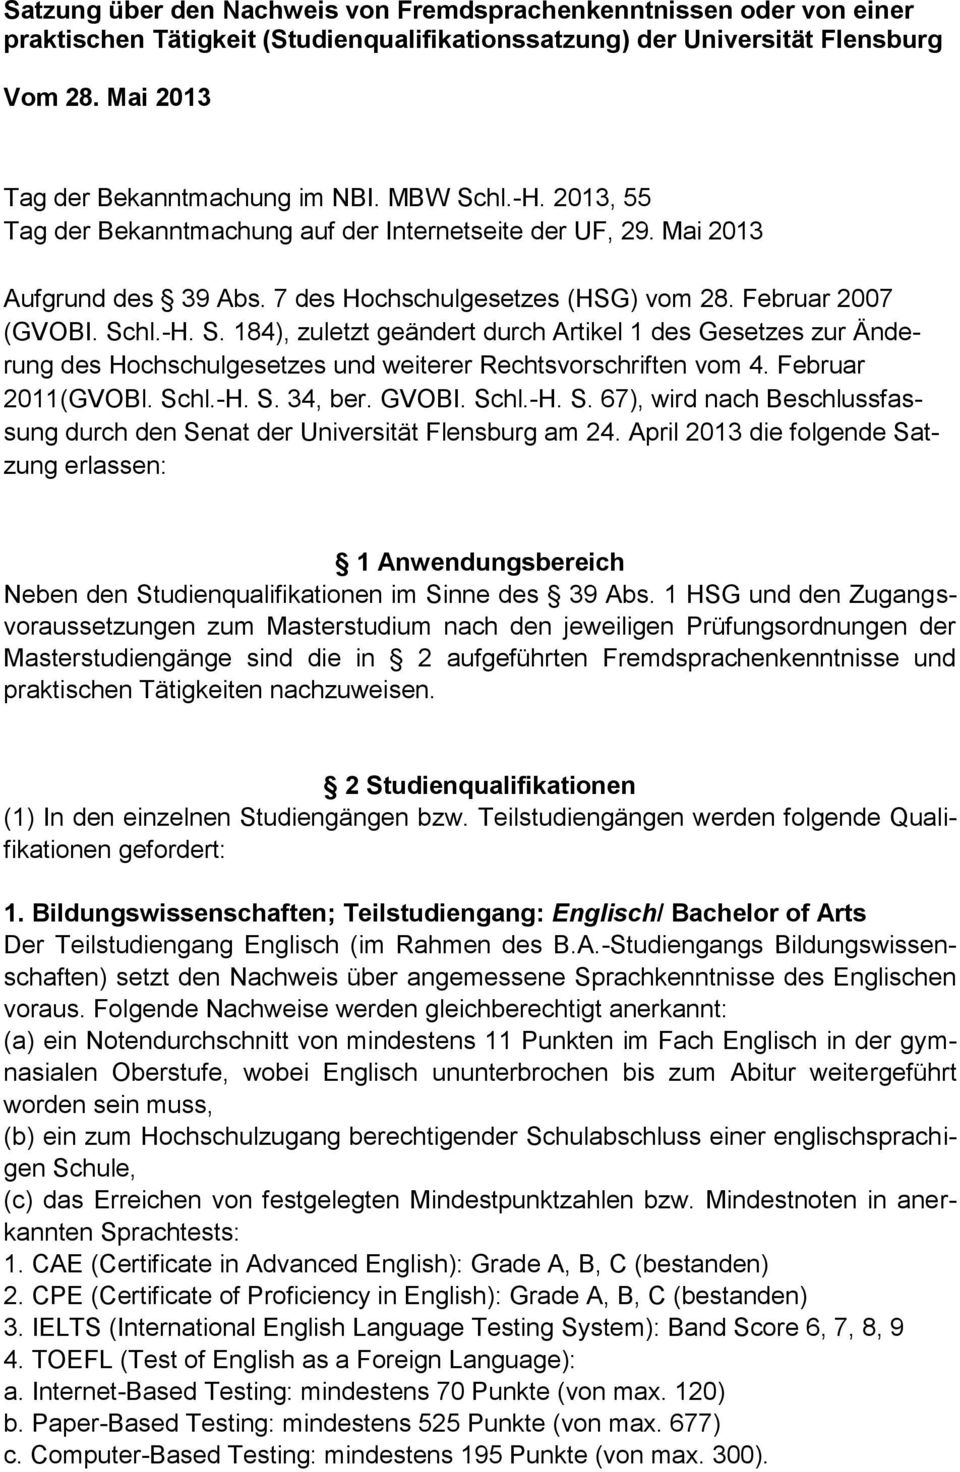 Februar 2011(GVOBl. Schl.-H. S. 34, ber. GVOBI. Schl.-H. S. 67), wird nach Beschlussfassung durch den Senat der Universität Flensburg am 24.